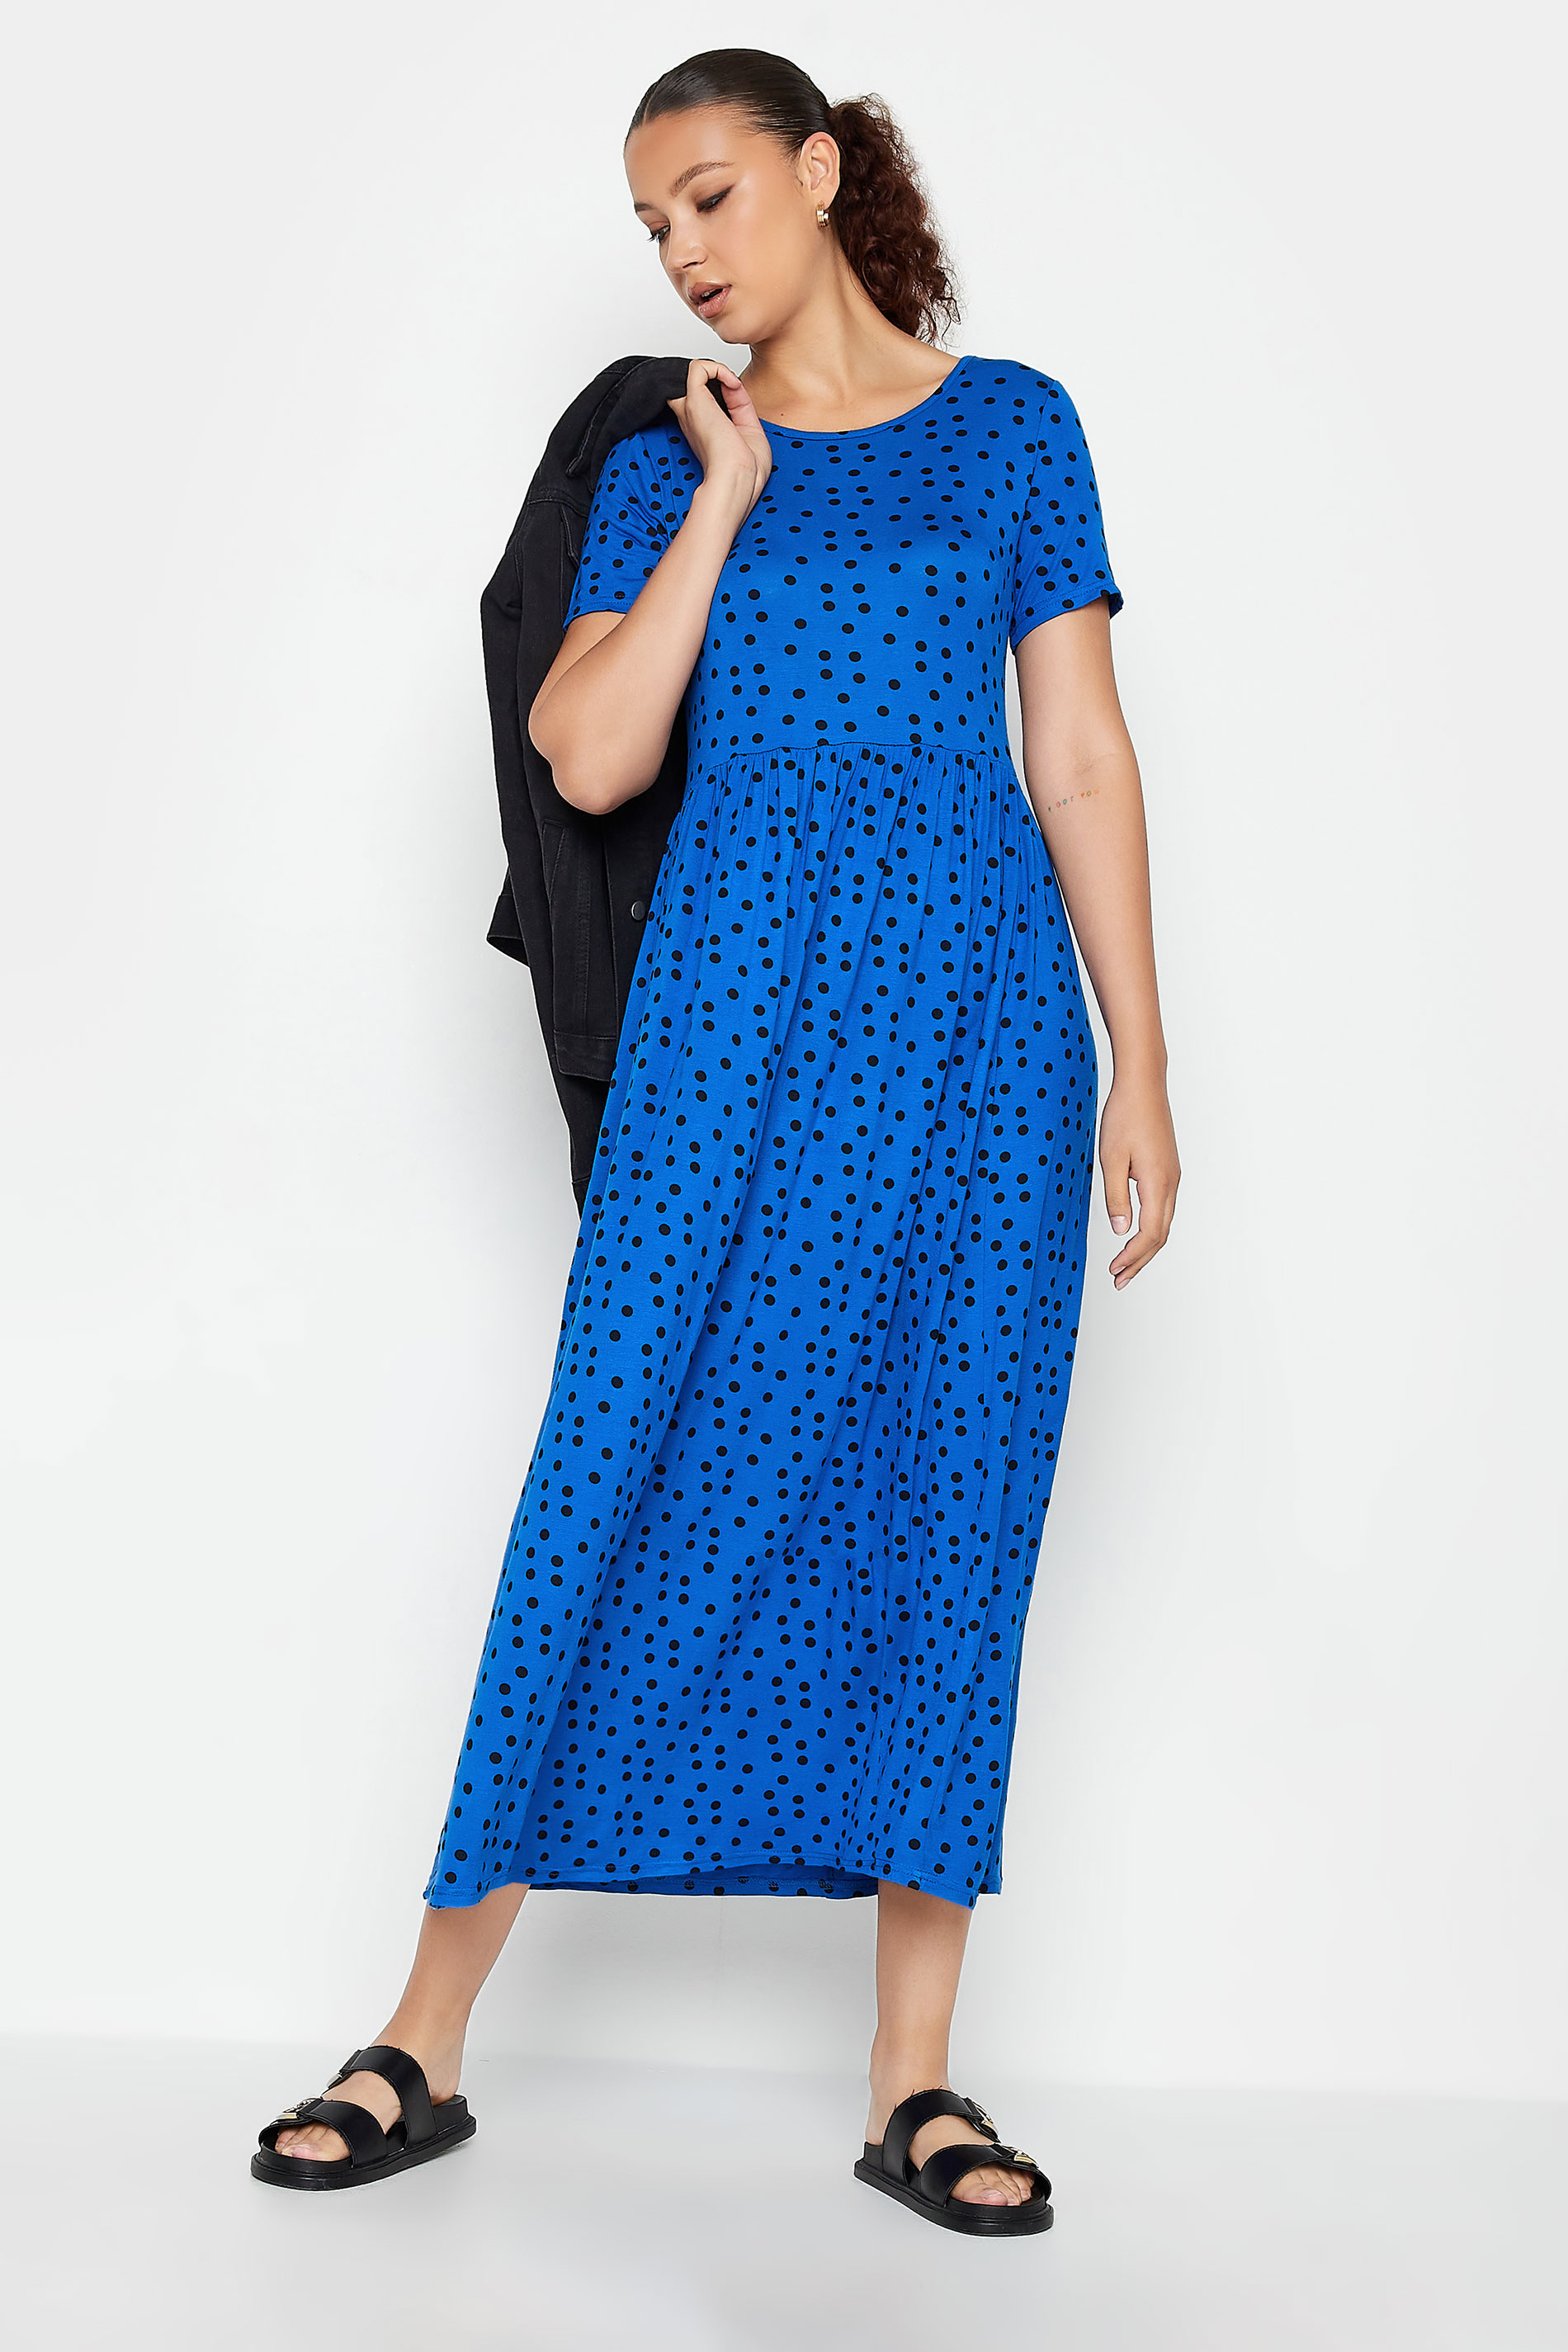 LTS Tall Cobalt Blue Polka Dot Maxi Dress | Long Tall Sally  1